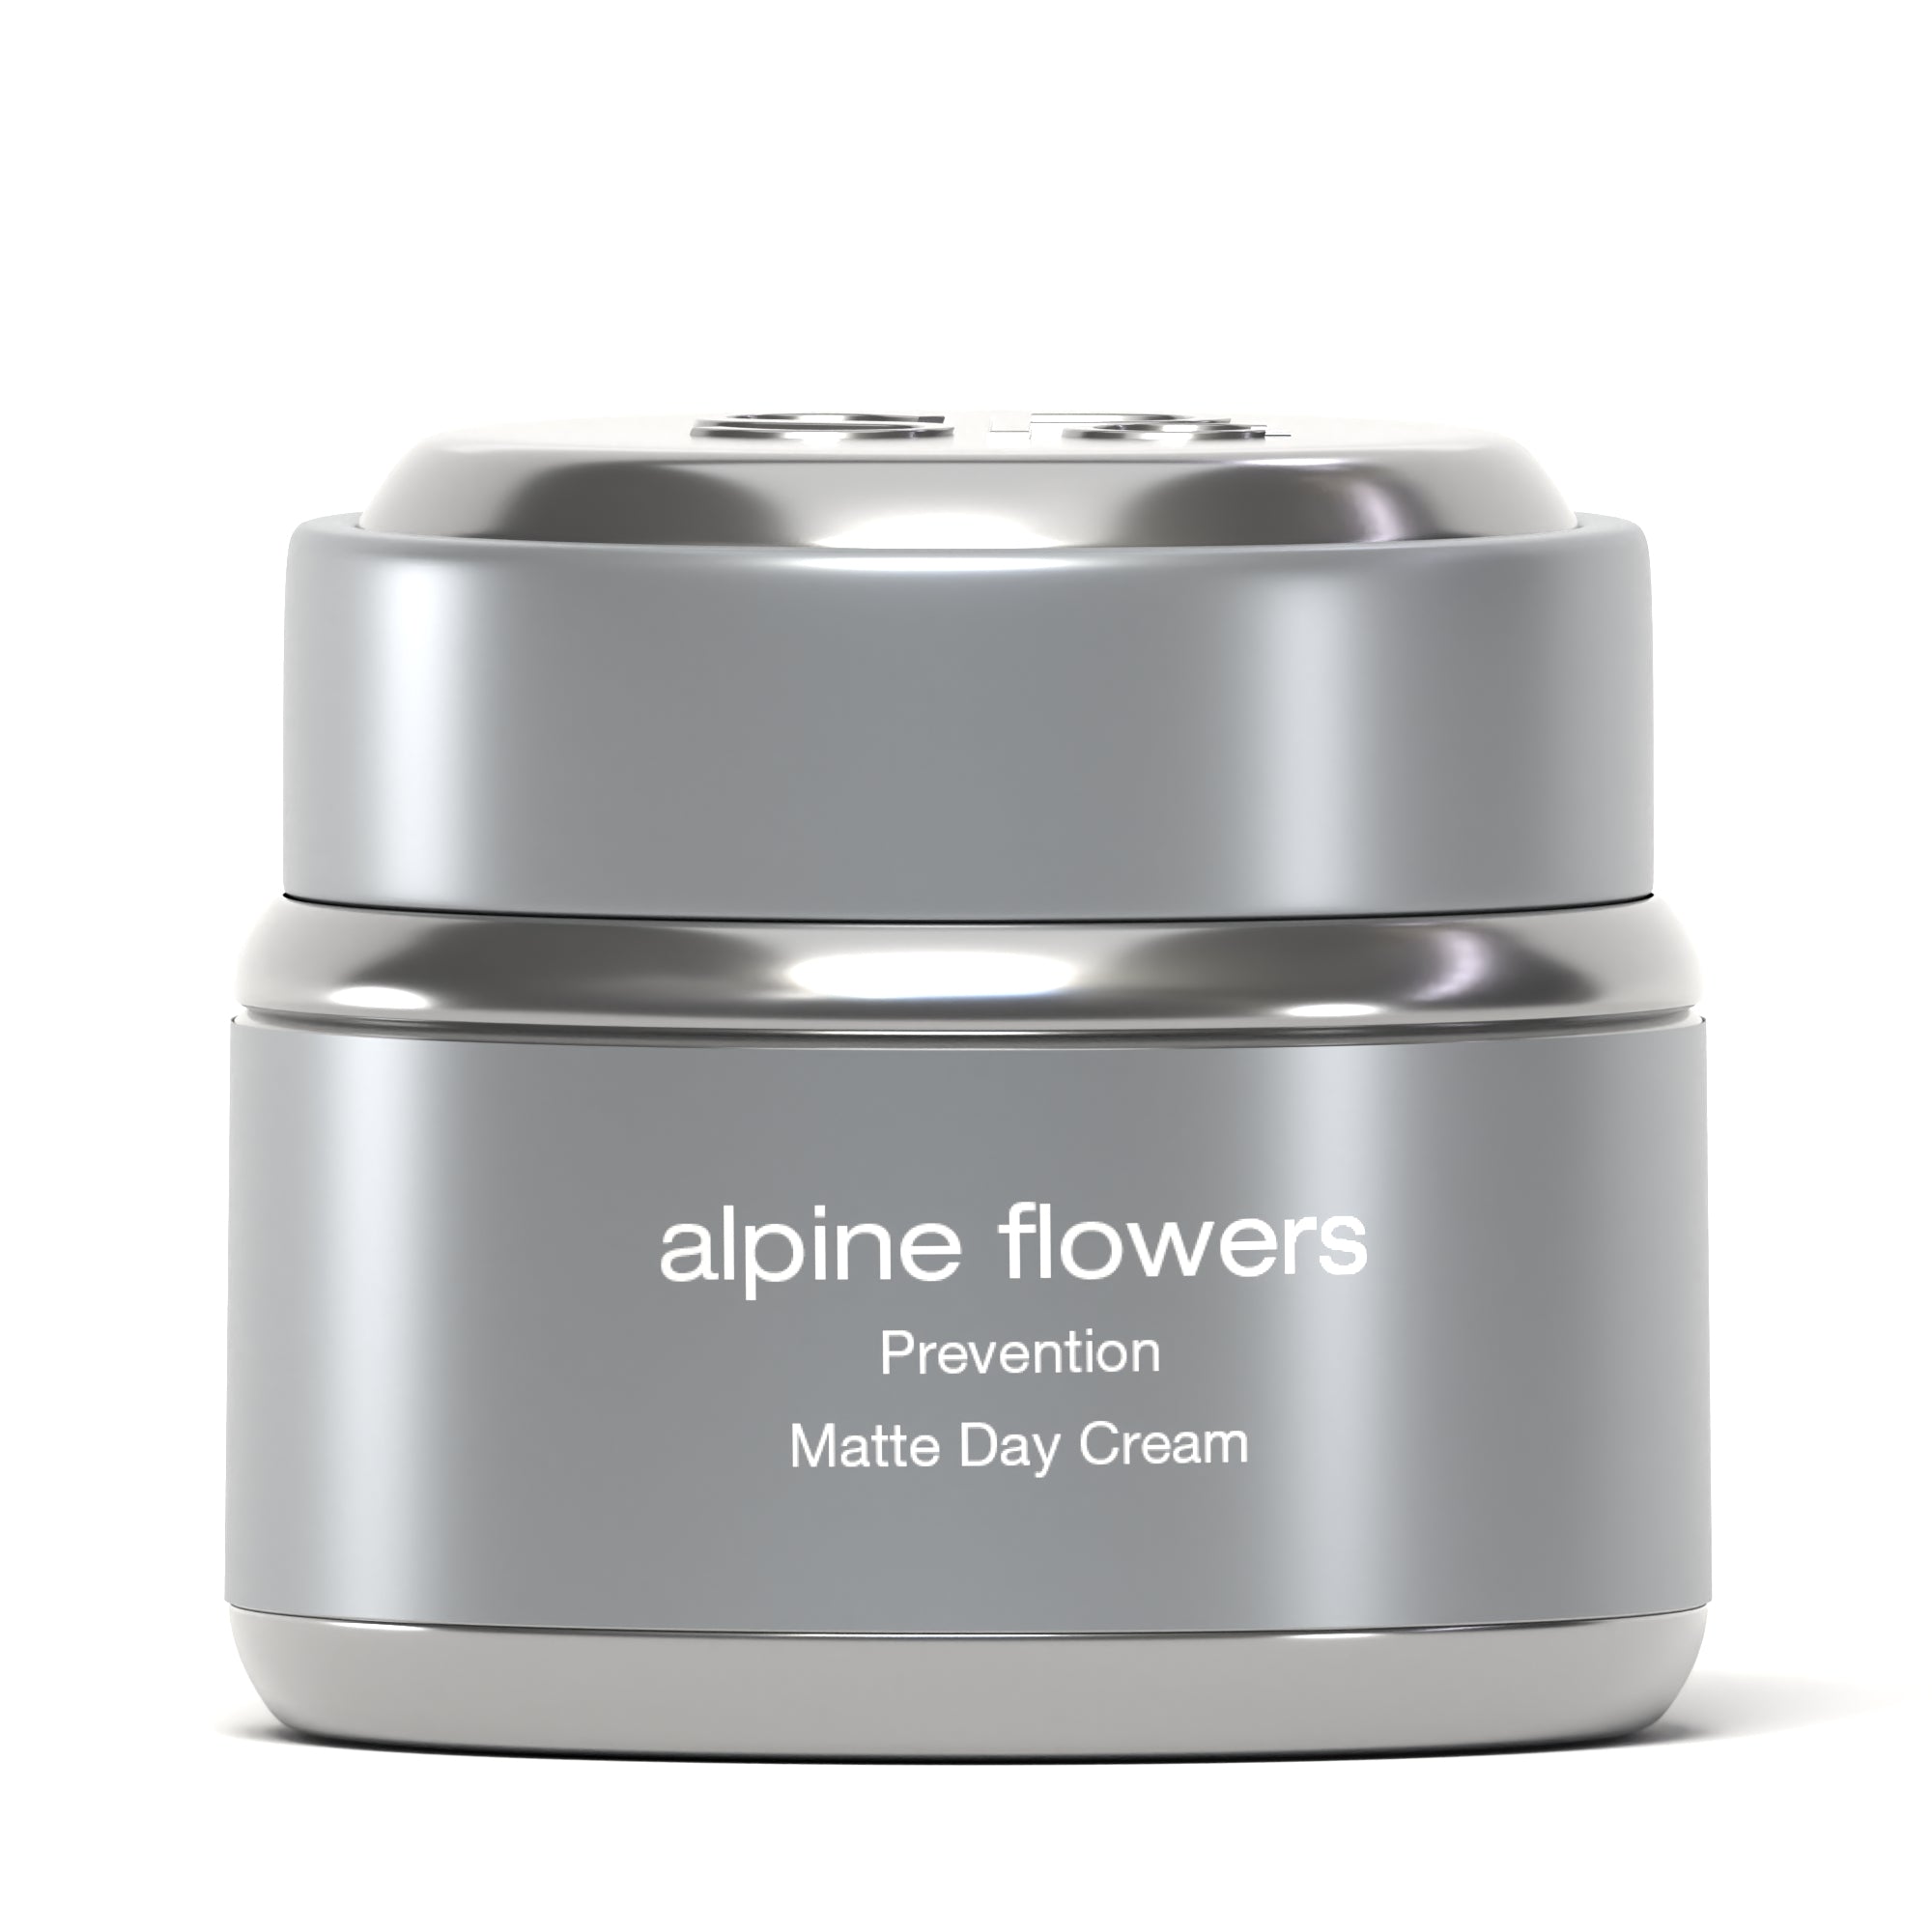 alpine flowers Matte Day Cream